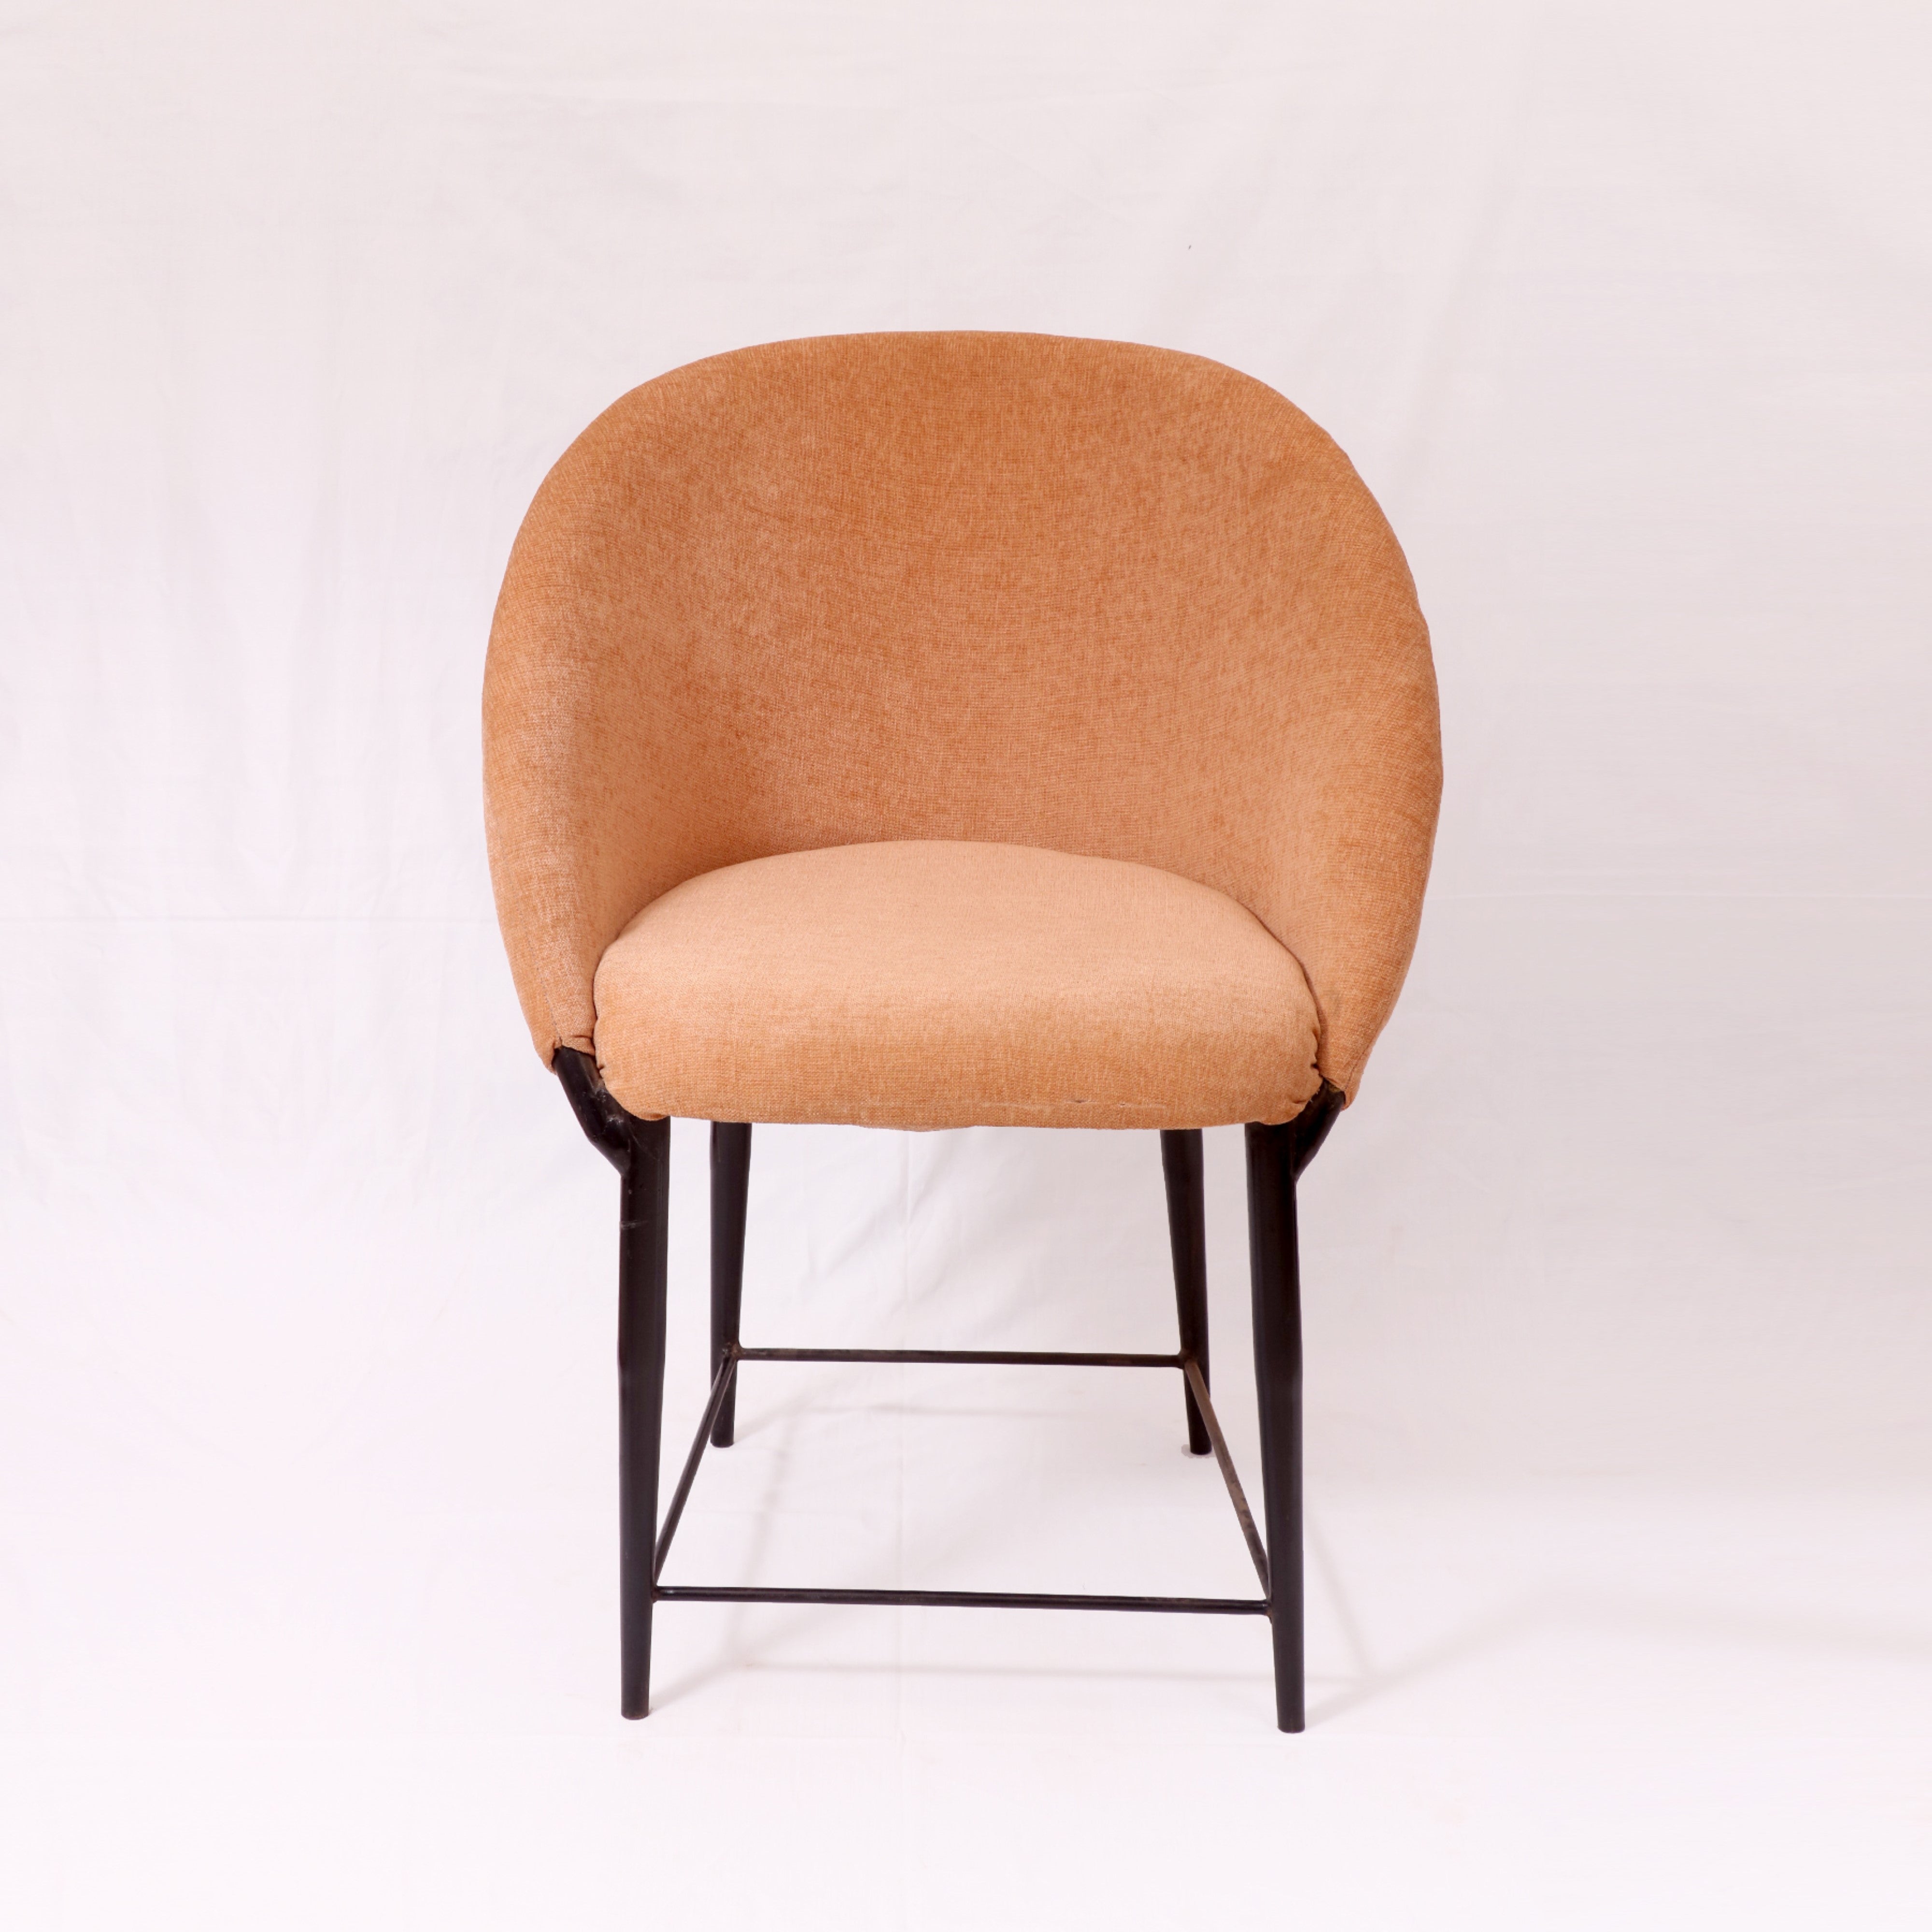 Colorful Metallic Chair Arm Chair